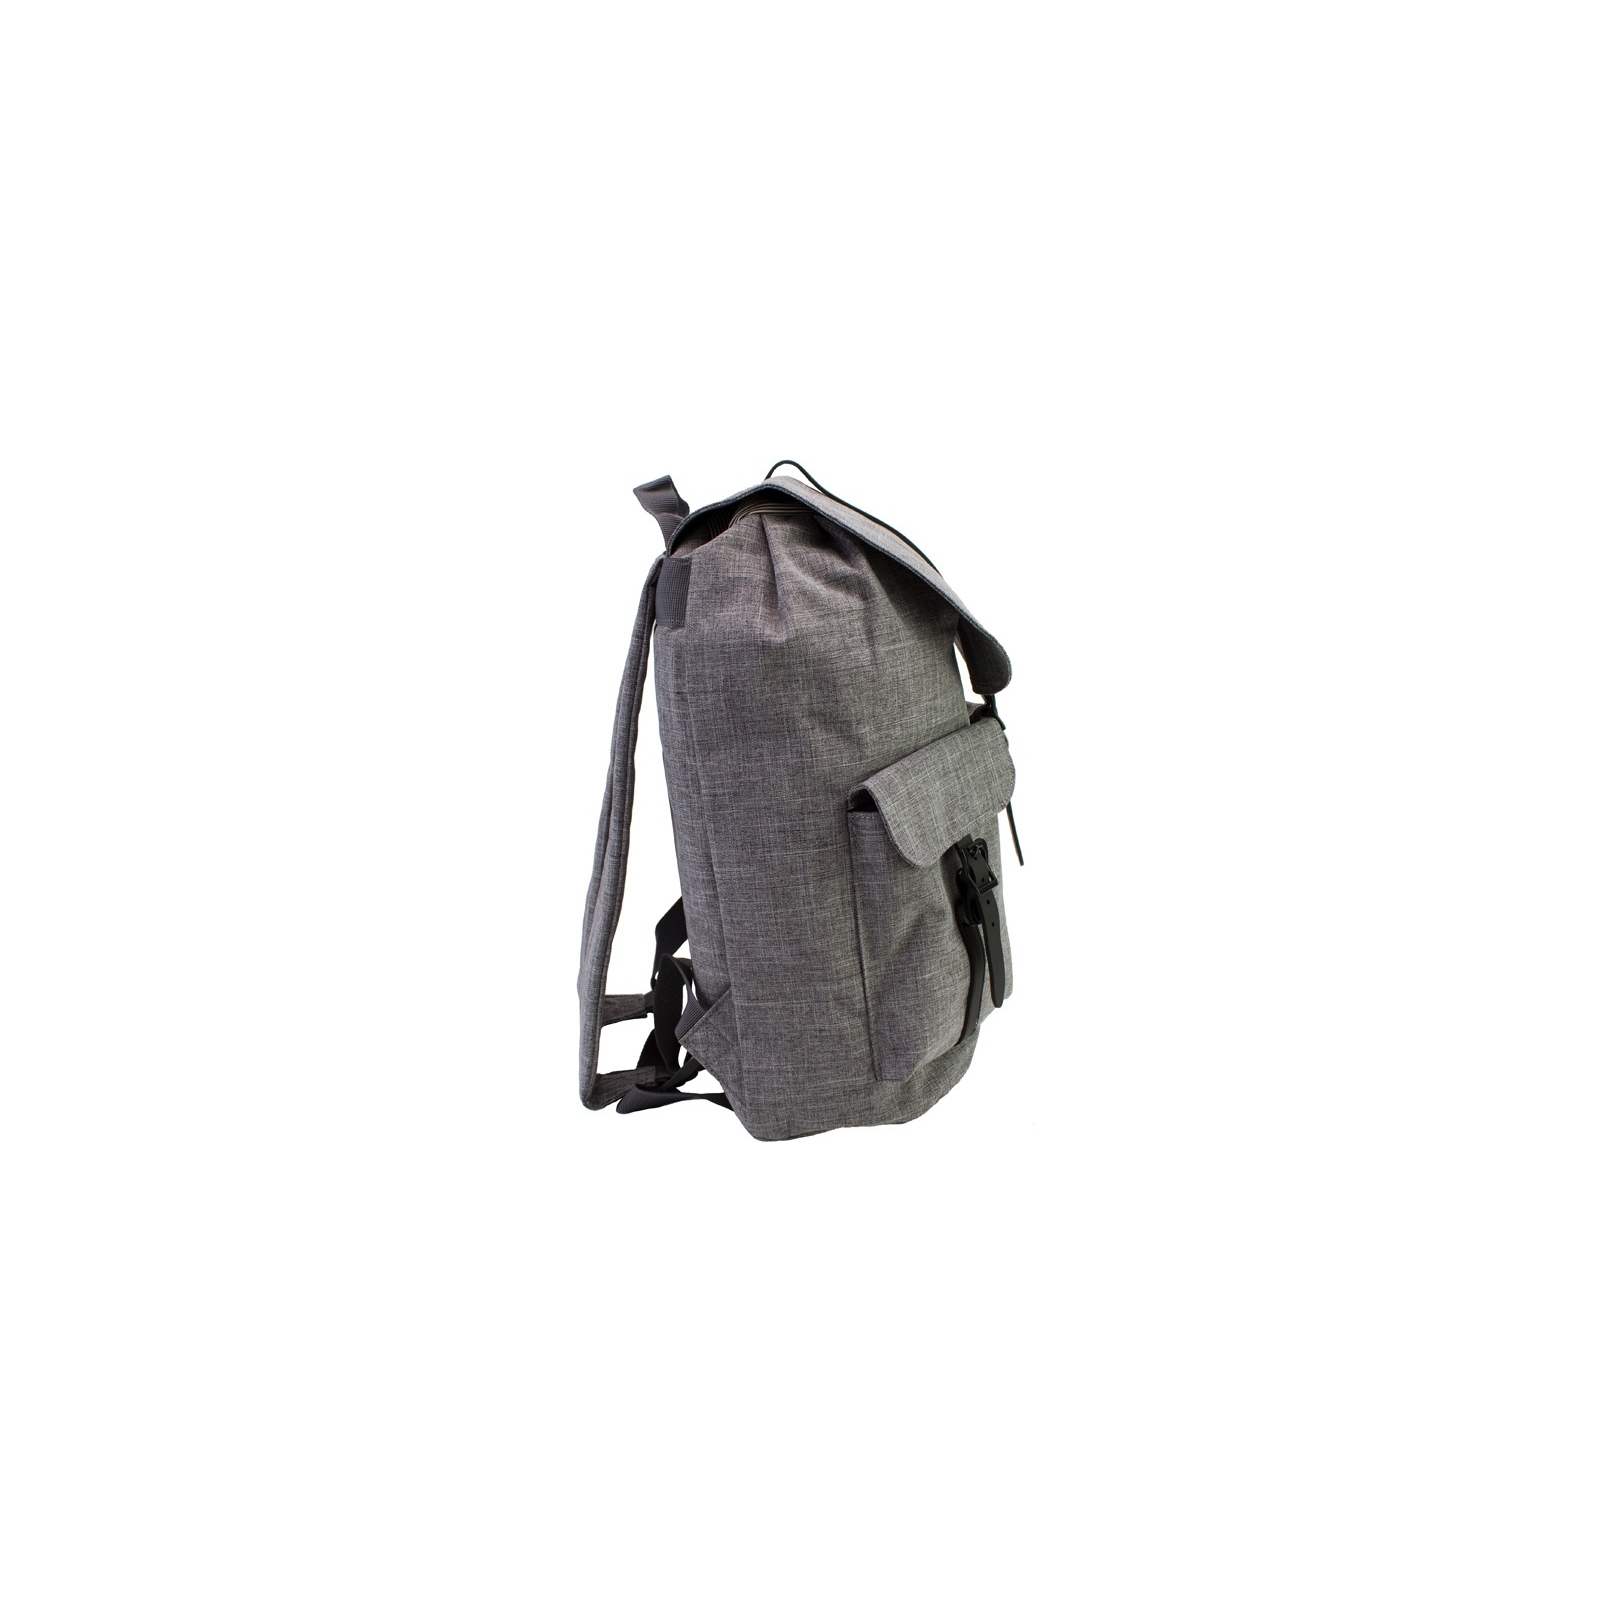 Рюкзак школьный Bodachel 43*19*29 см серый (BS13-26) изображение 4